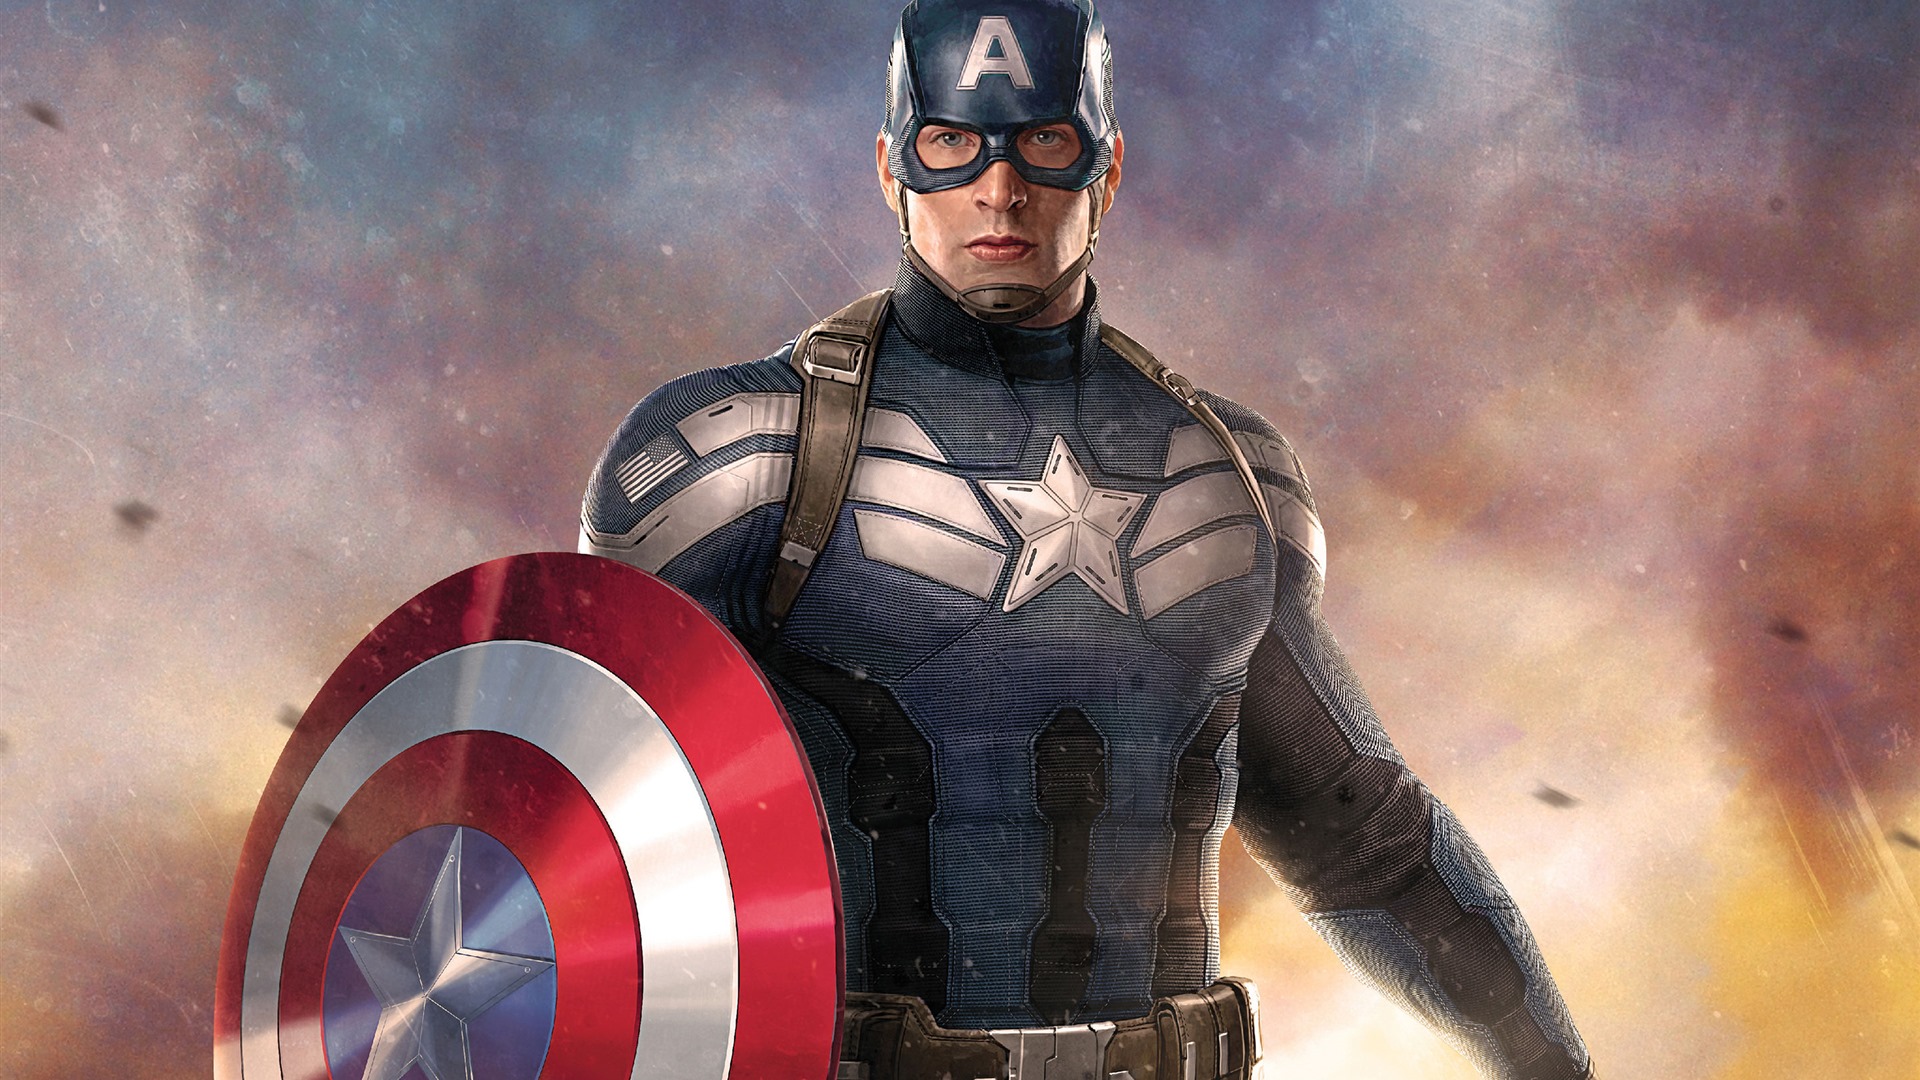 Capitán América: guerra civil, fondos de pantalla de alta definición de películas #12 - 1920x1080